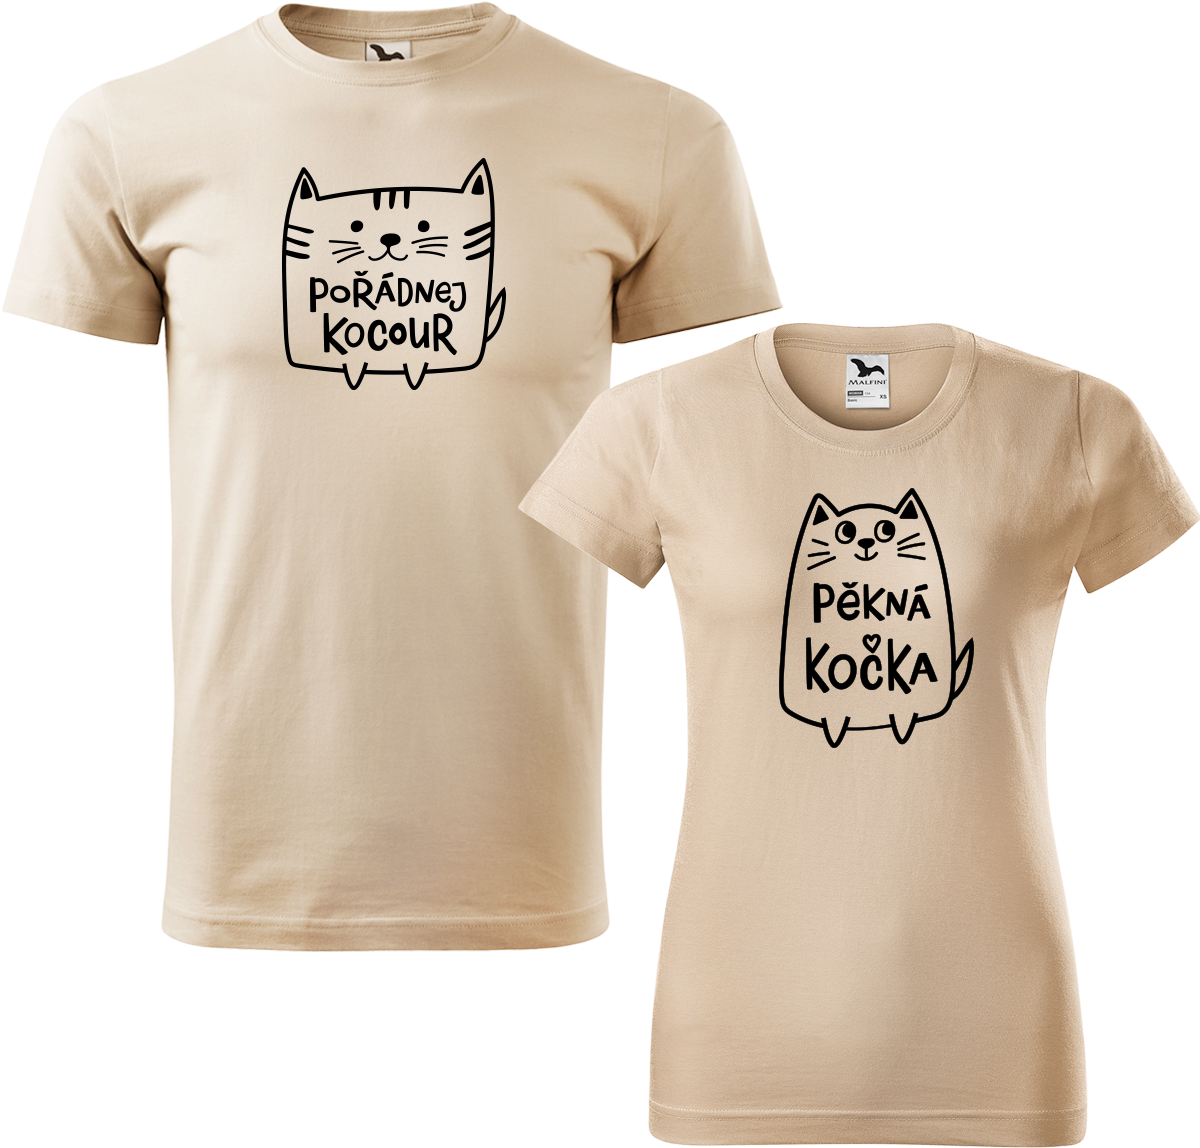 Trička pro páry - Pořádnej kocour a pěkná kočka Barva: Písková (08), Velikost dámské tričko: M, Velikost pánské tričko: M